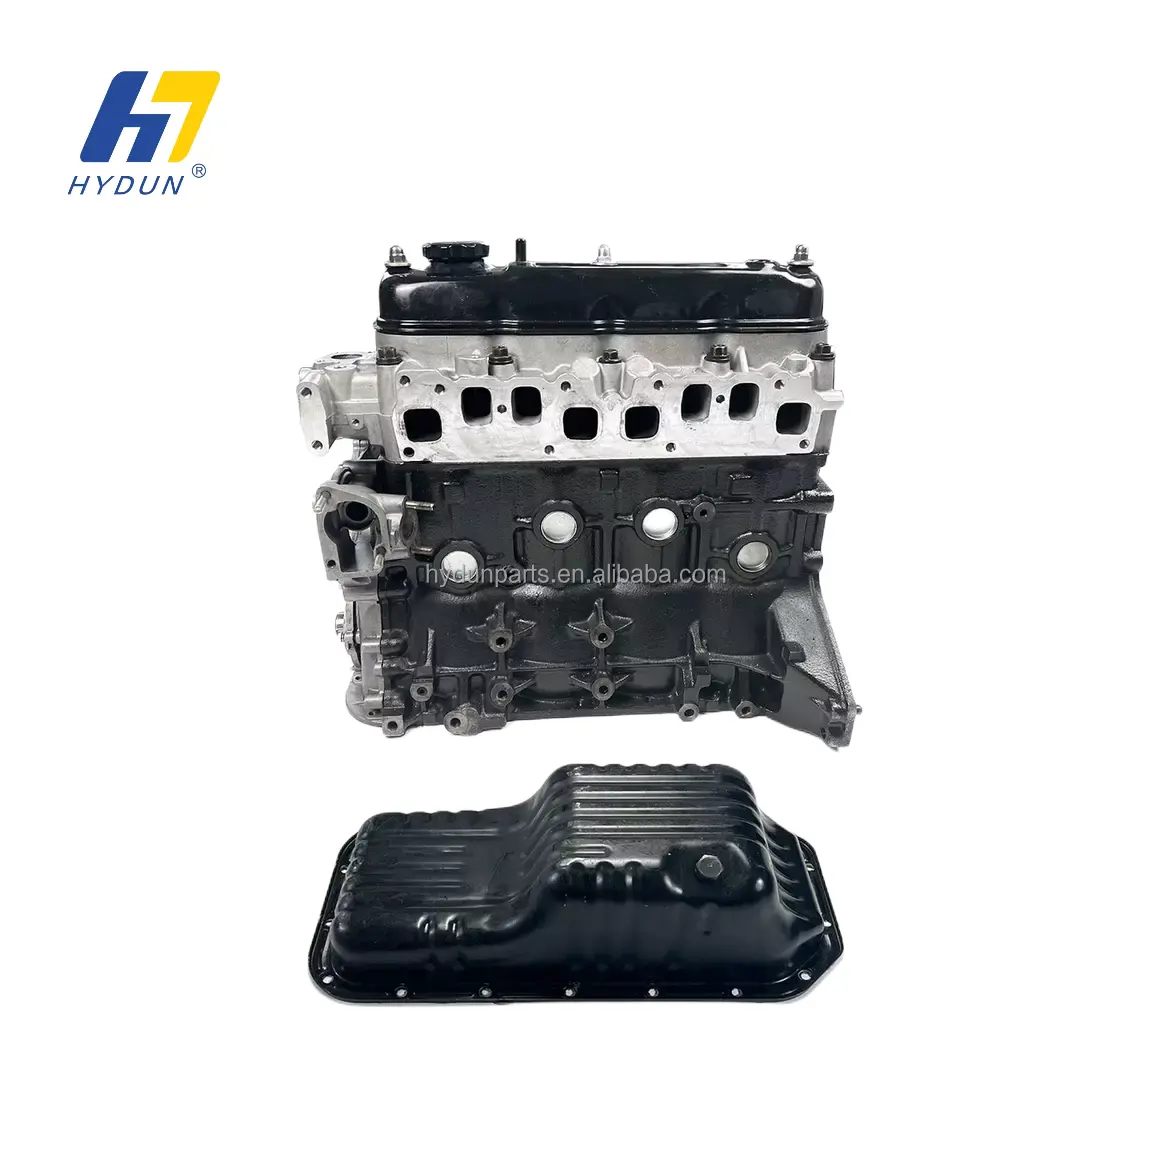 Hydun 11101-73020 moteur d'assemblage de moteur de camion de haute qualité 4Y pour Toyota Hiace/Lite Ace/Hilux